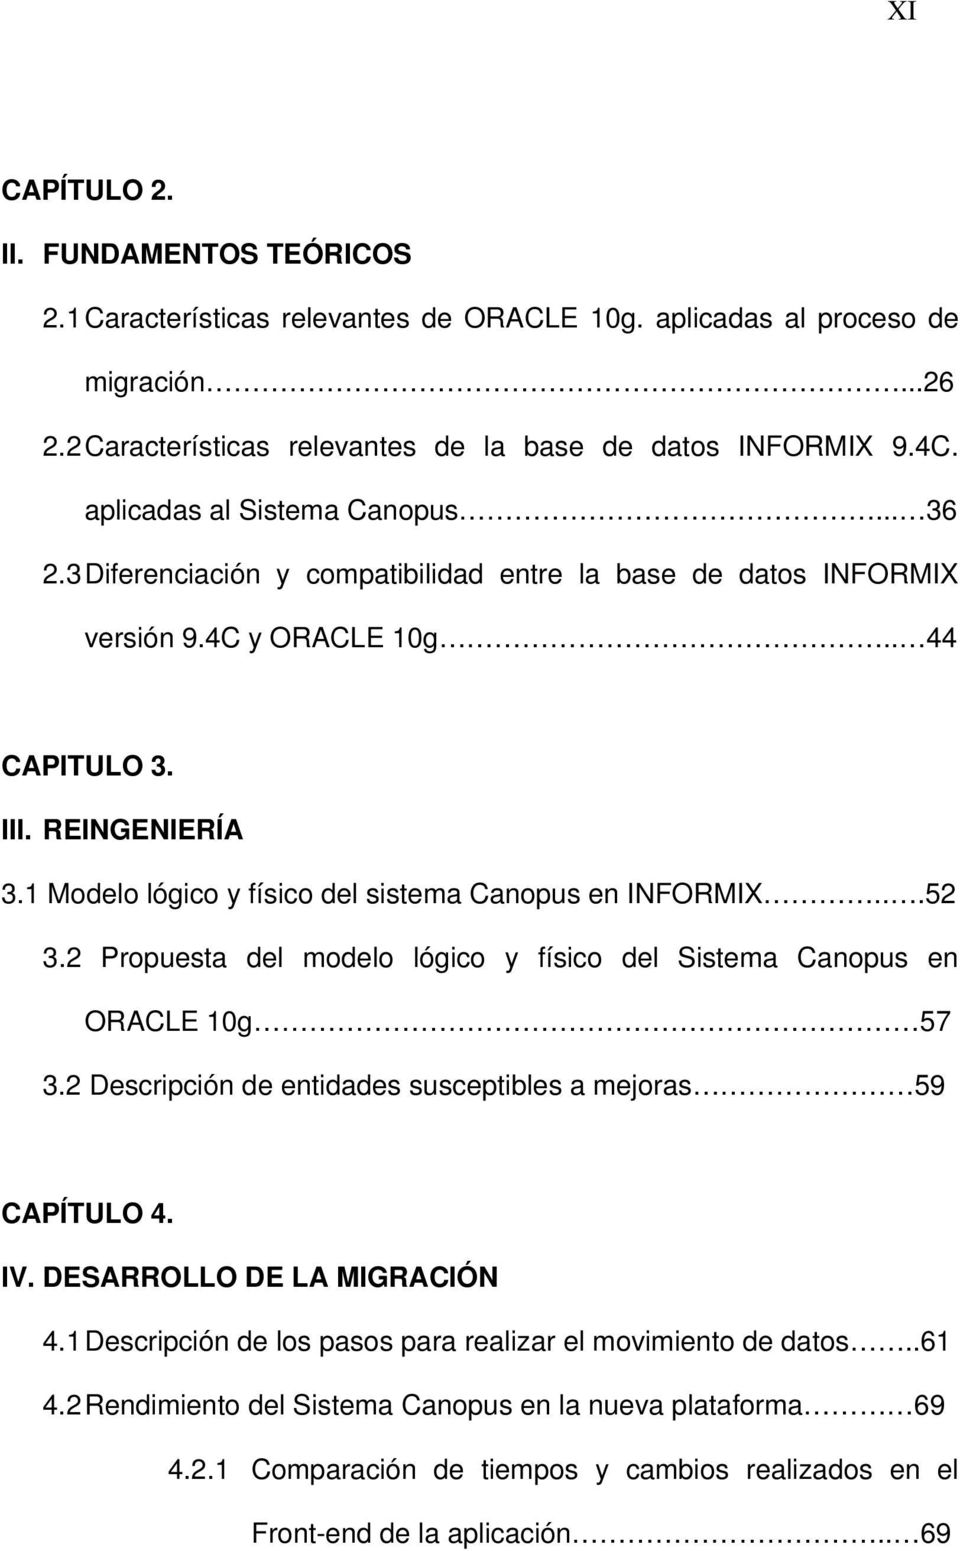 1 Modelo lógico y físico del sistema Canopus en INFORMIX...52 3.2 Propuesta del modelo lógico y físico del Sistema Canopus en ORACLE 10g 57 3.